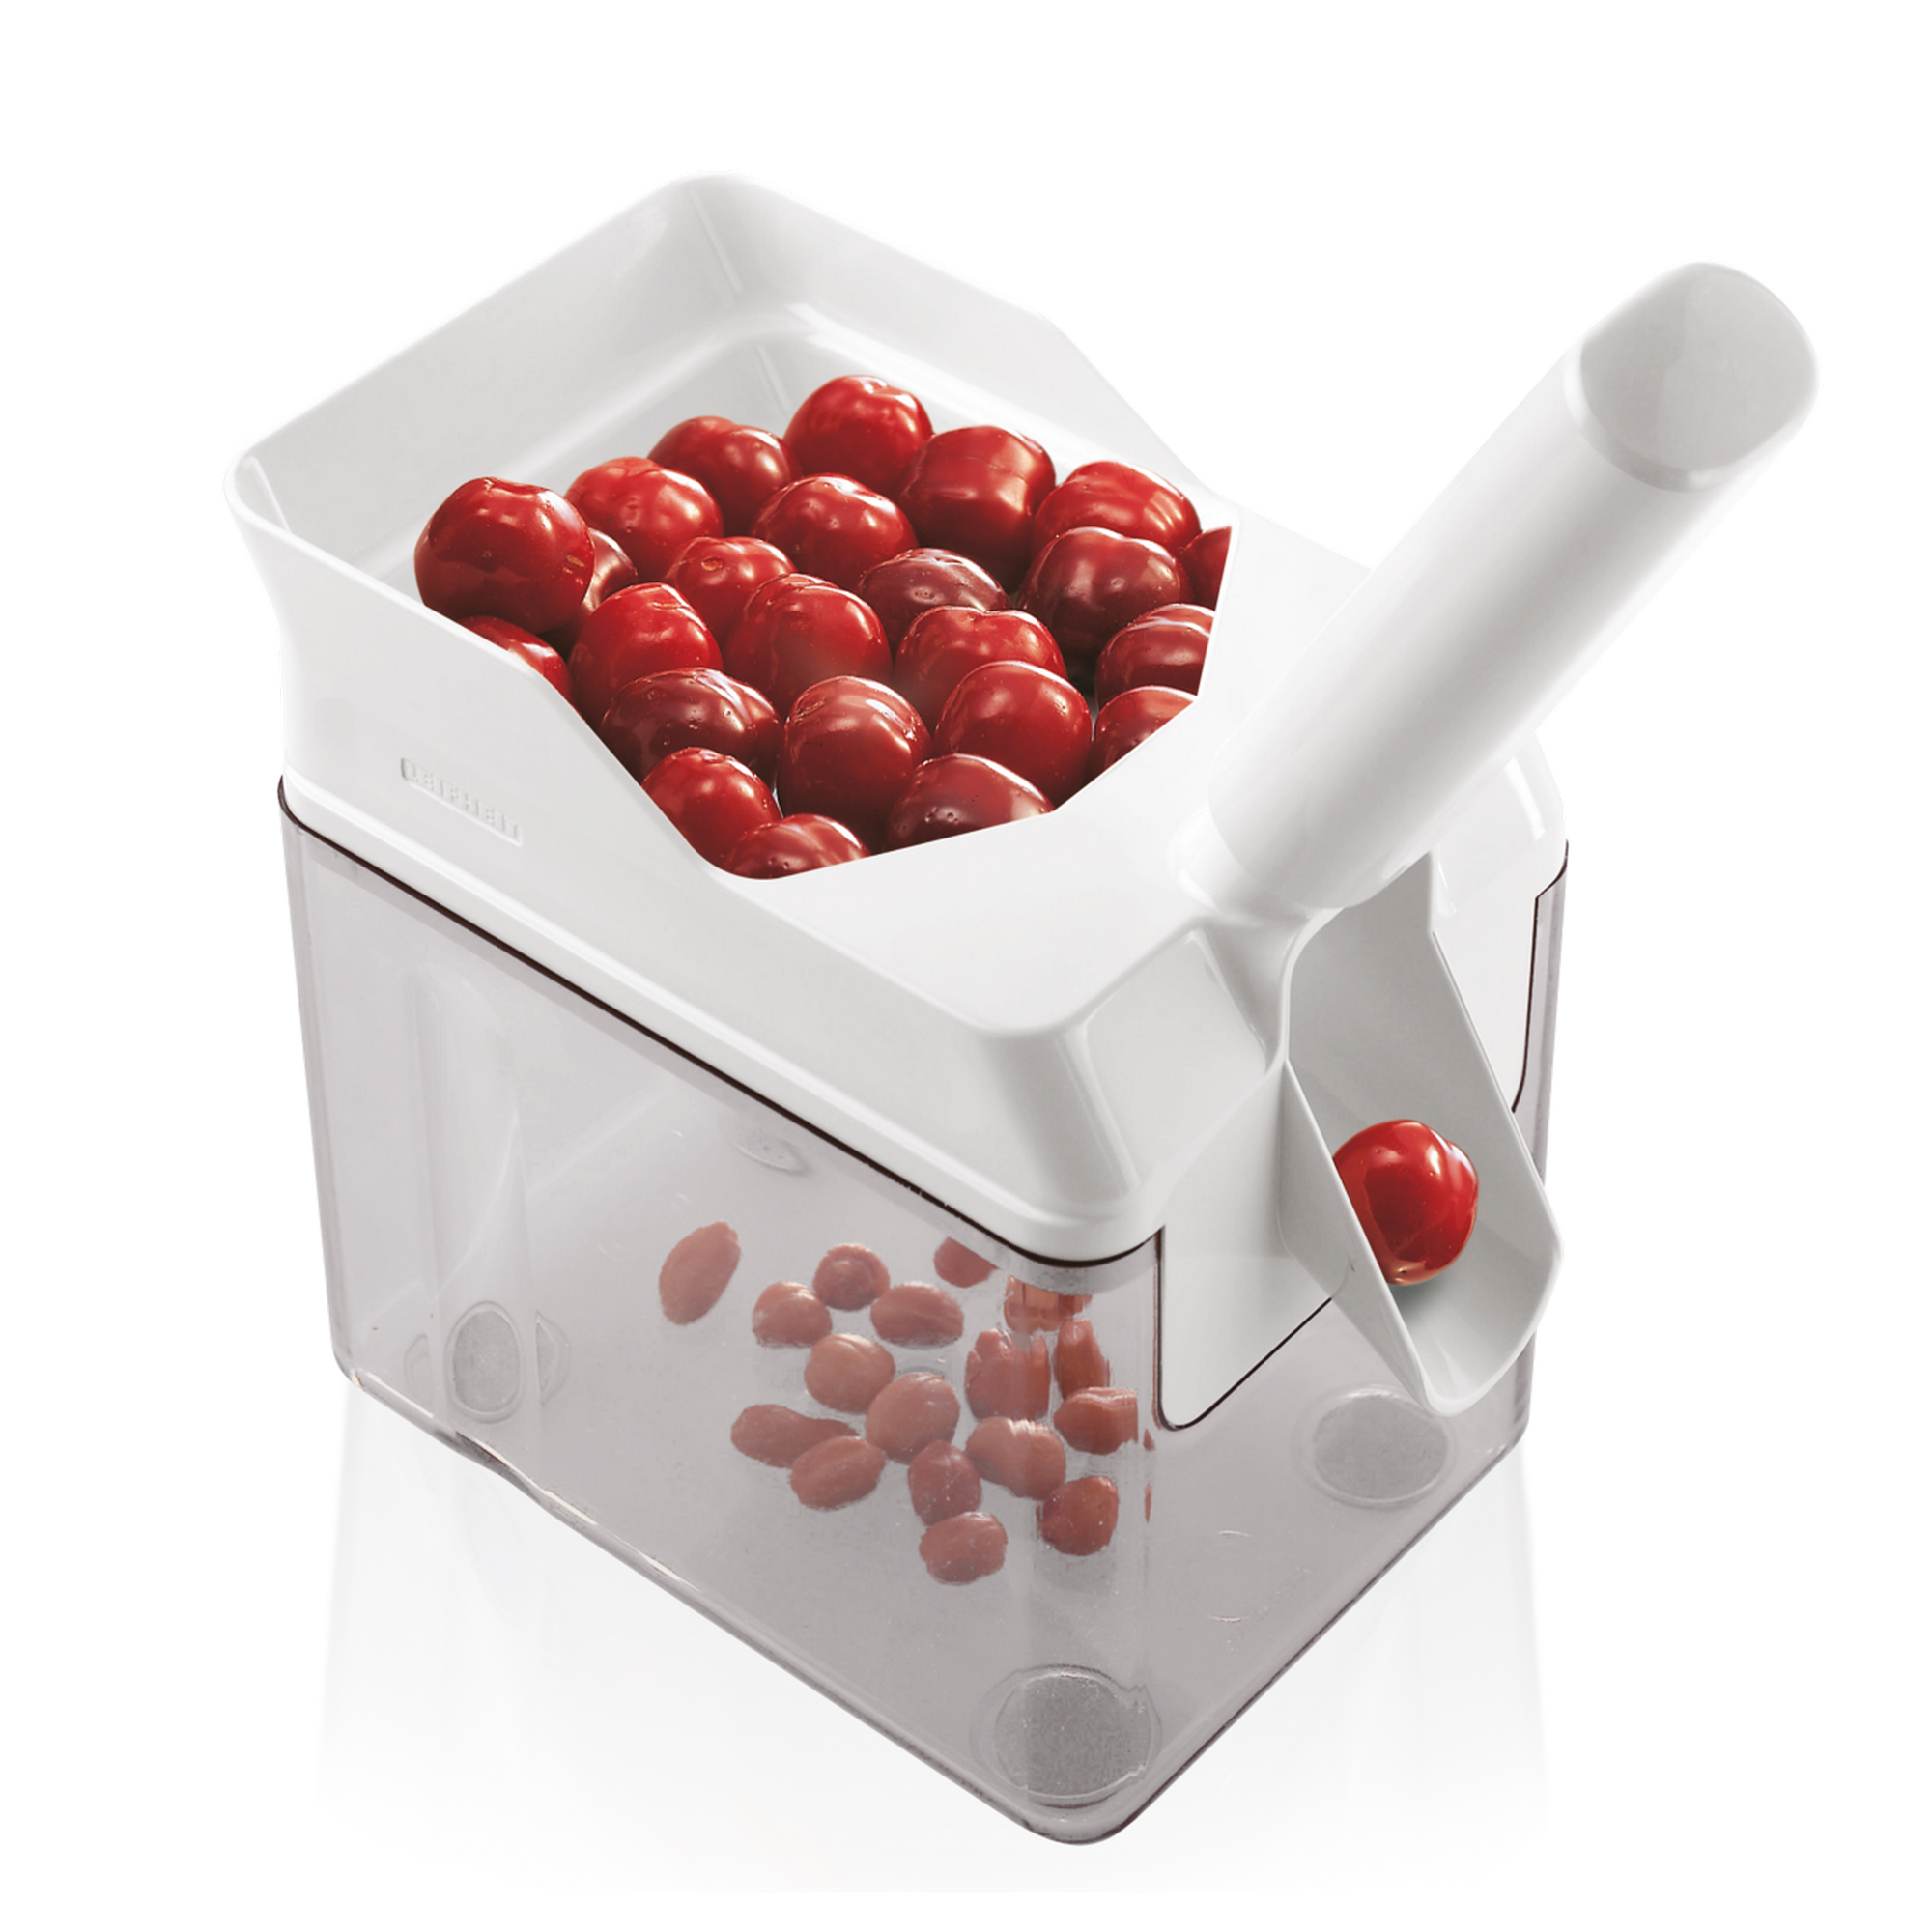 Kirschentkerner 'CherryMat' mit Auffangbehälter + product picture